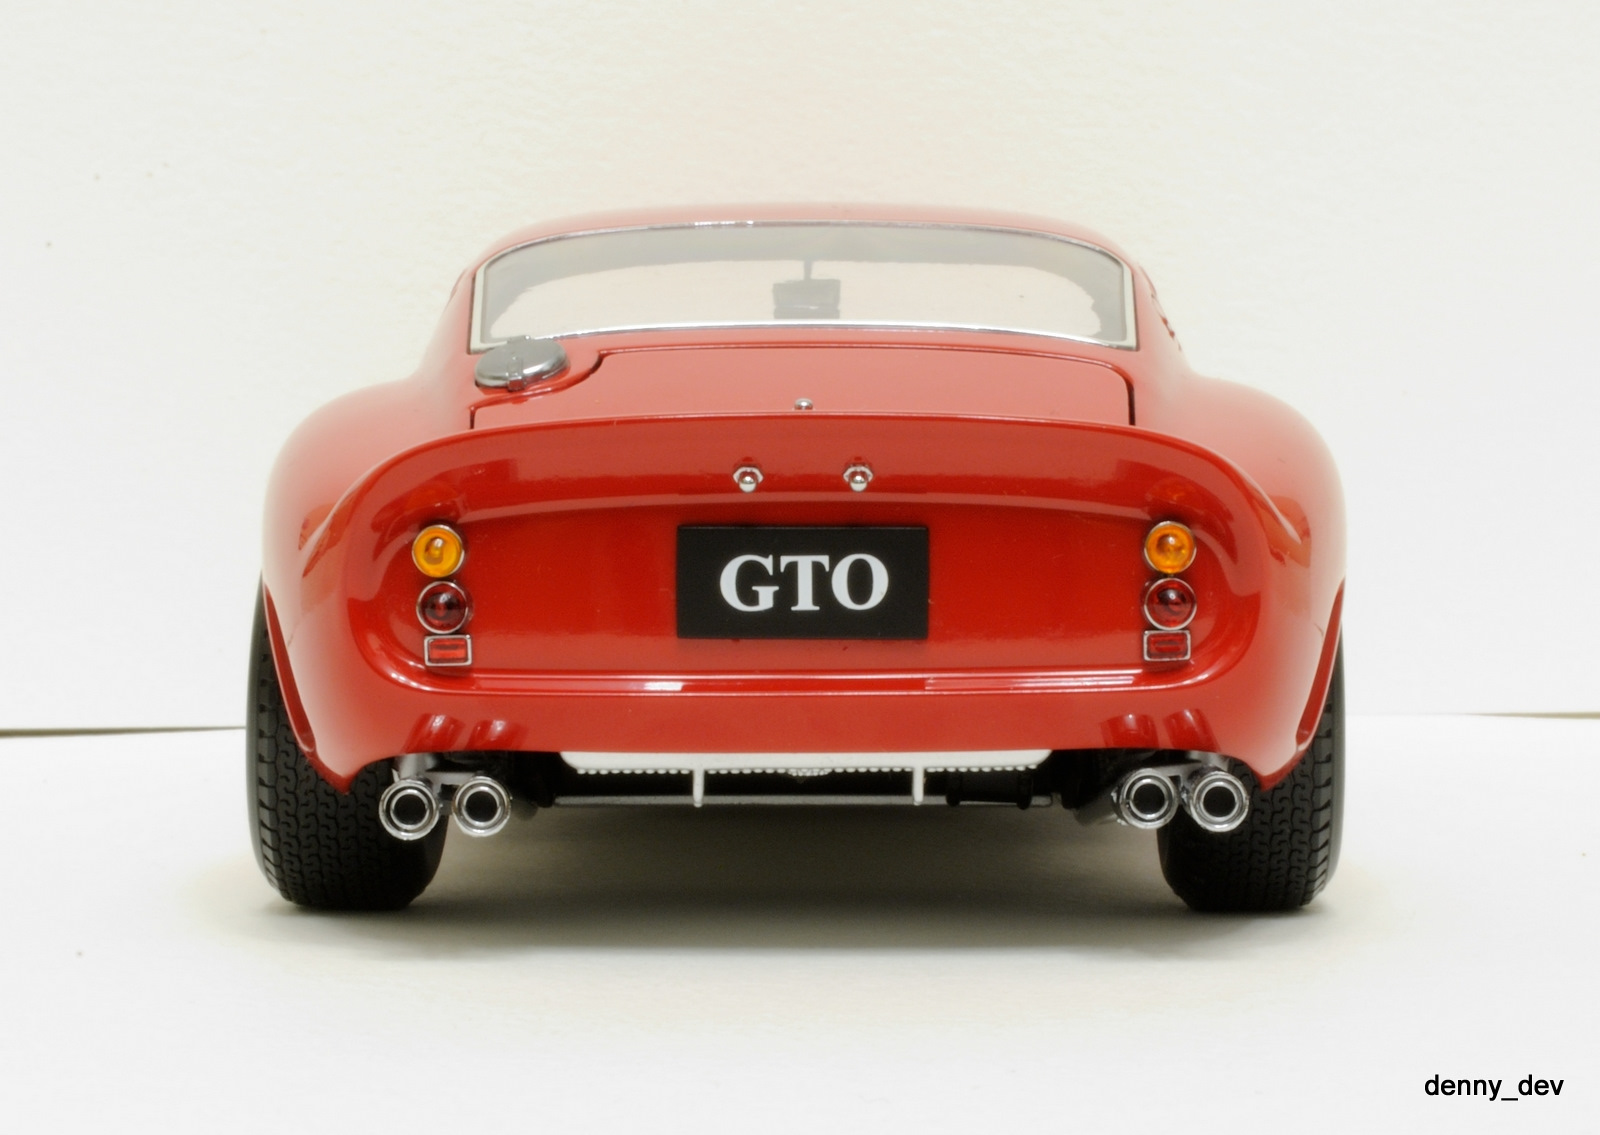 Ferrari gto 1962. 1962 Ferrari 250 GTO Kyosho. Ferrari 250 GTO 1962. Ferrari 250 GTO 1962 года. Ferrari 250 GTO 1962 моделька 1\18.